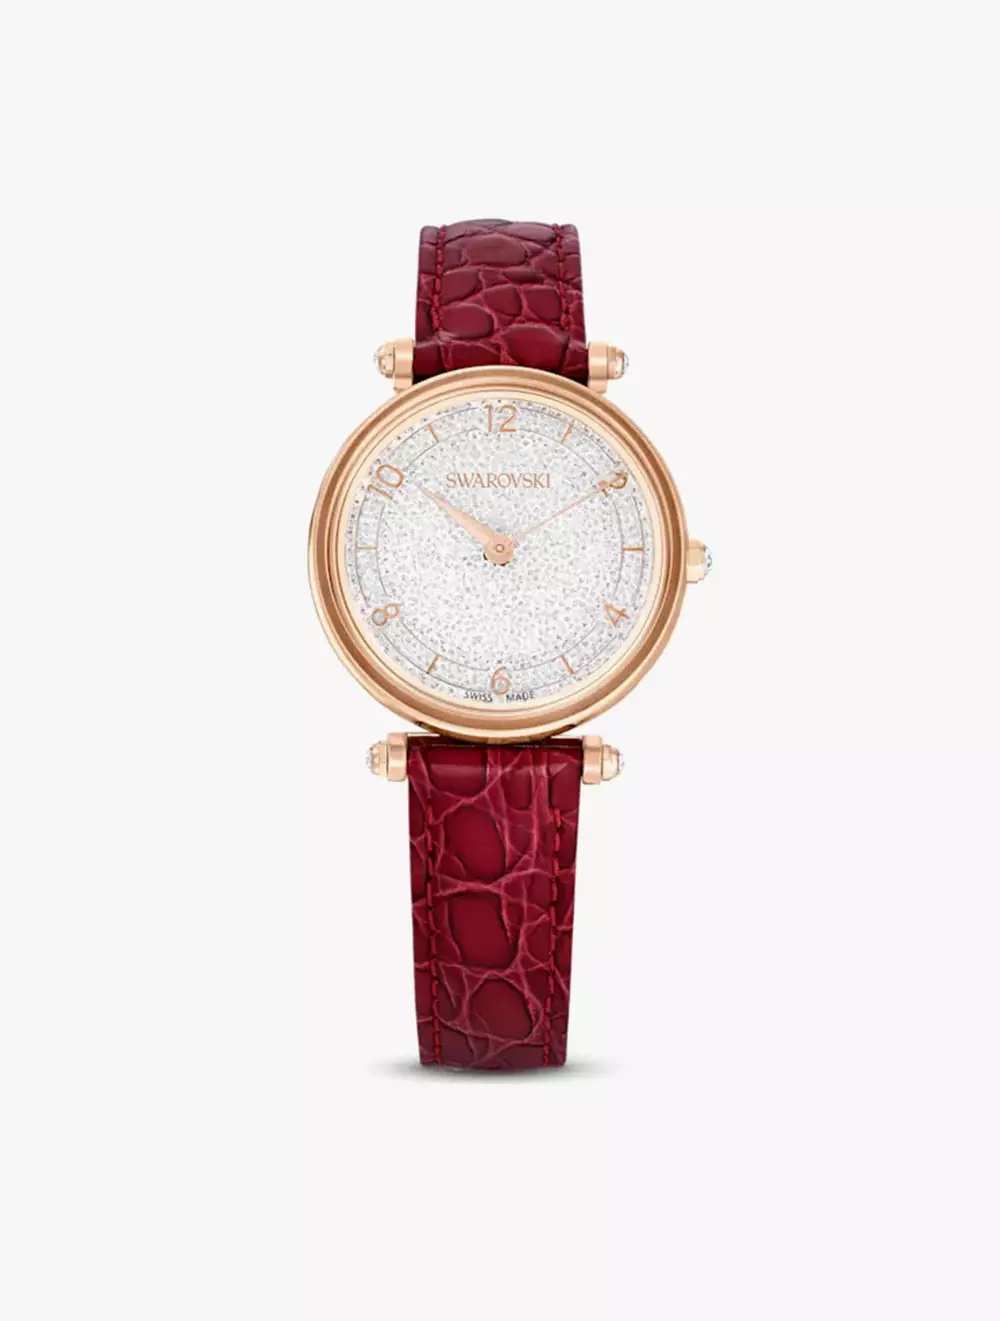 Jual Swarovski Crystalline Wonder Watch, Swiss Made, Leather Strap, Red ...